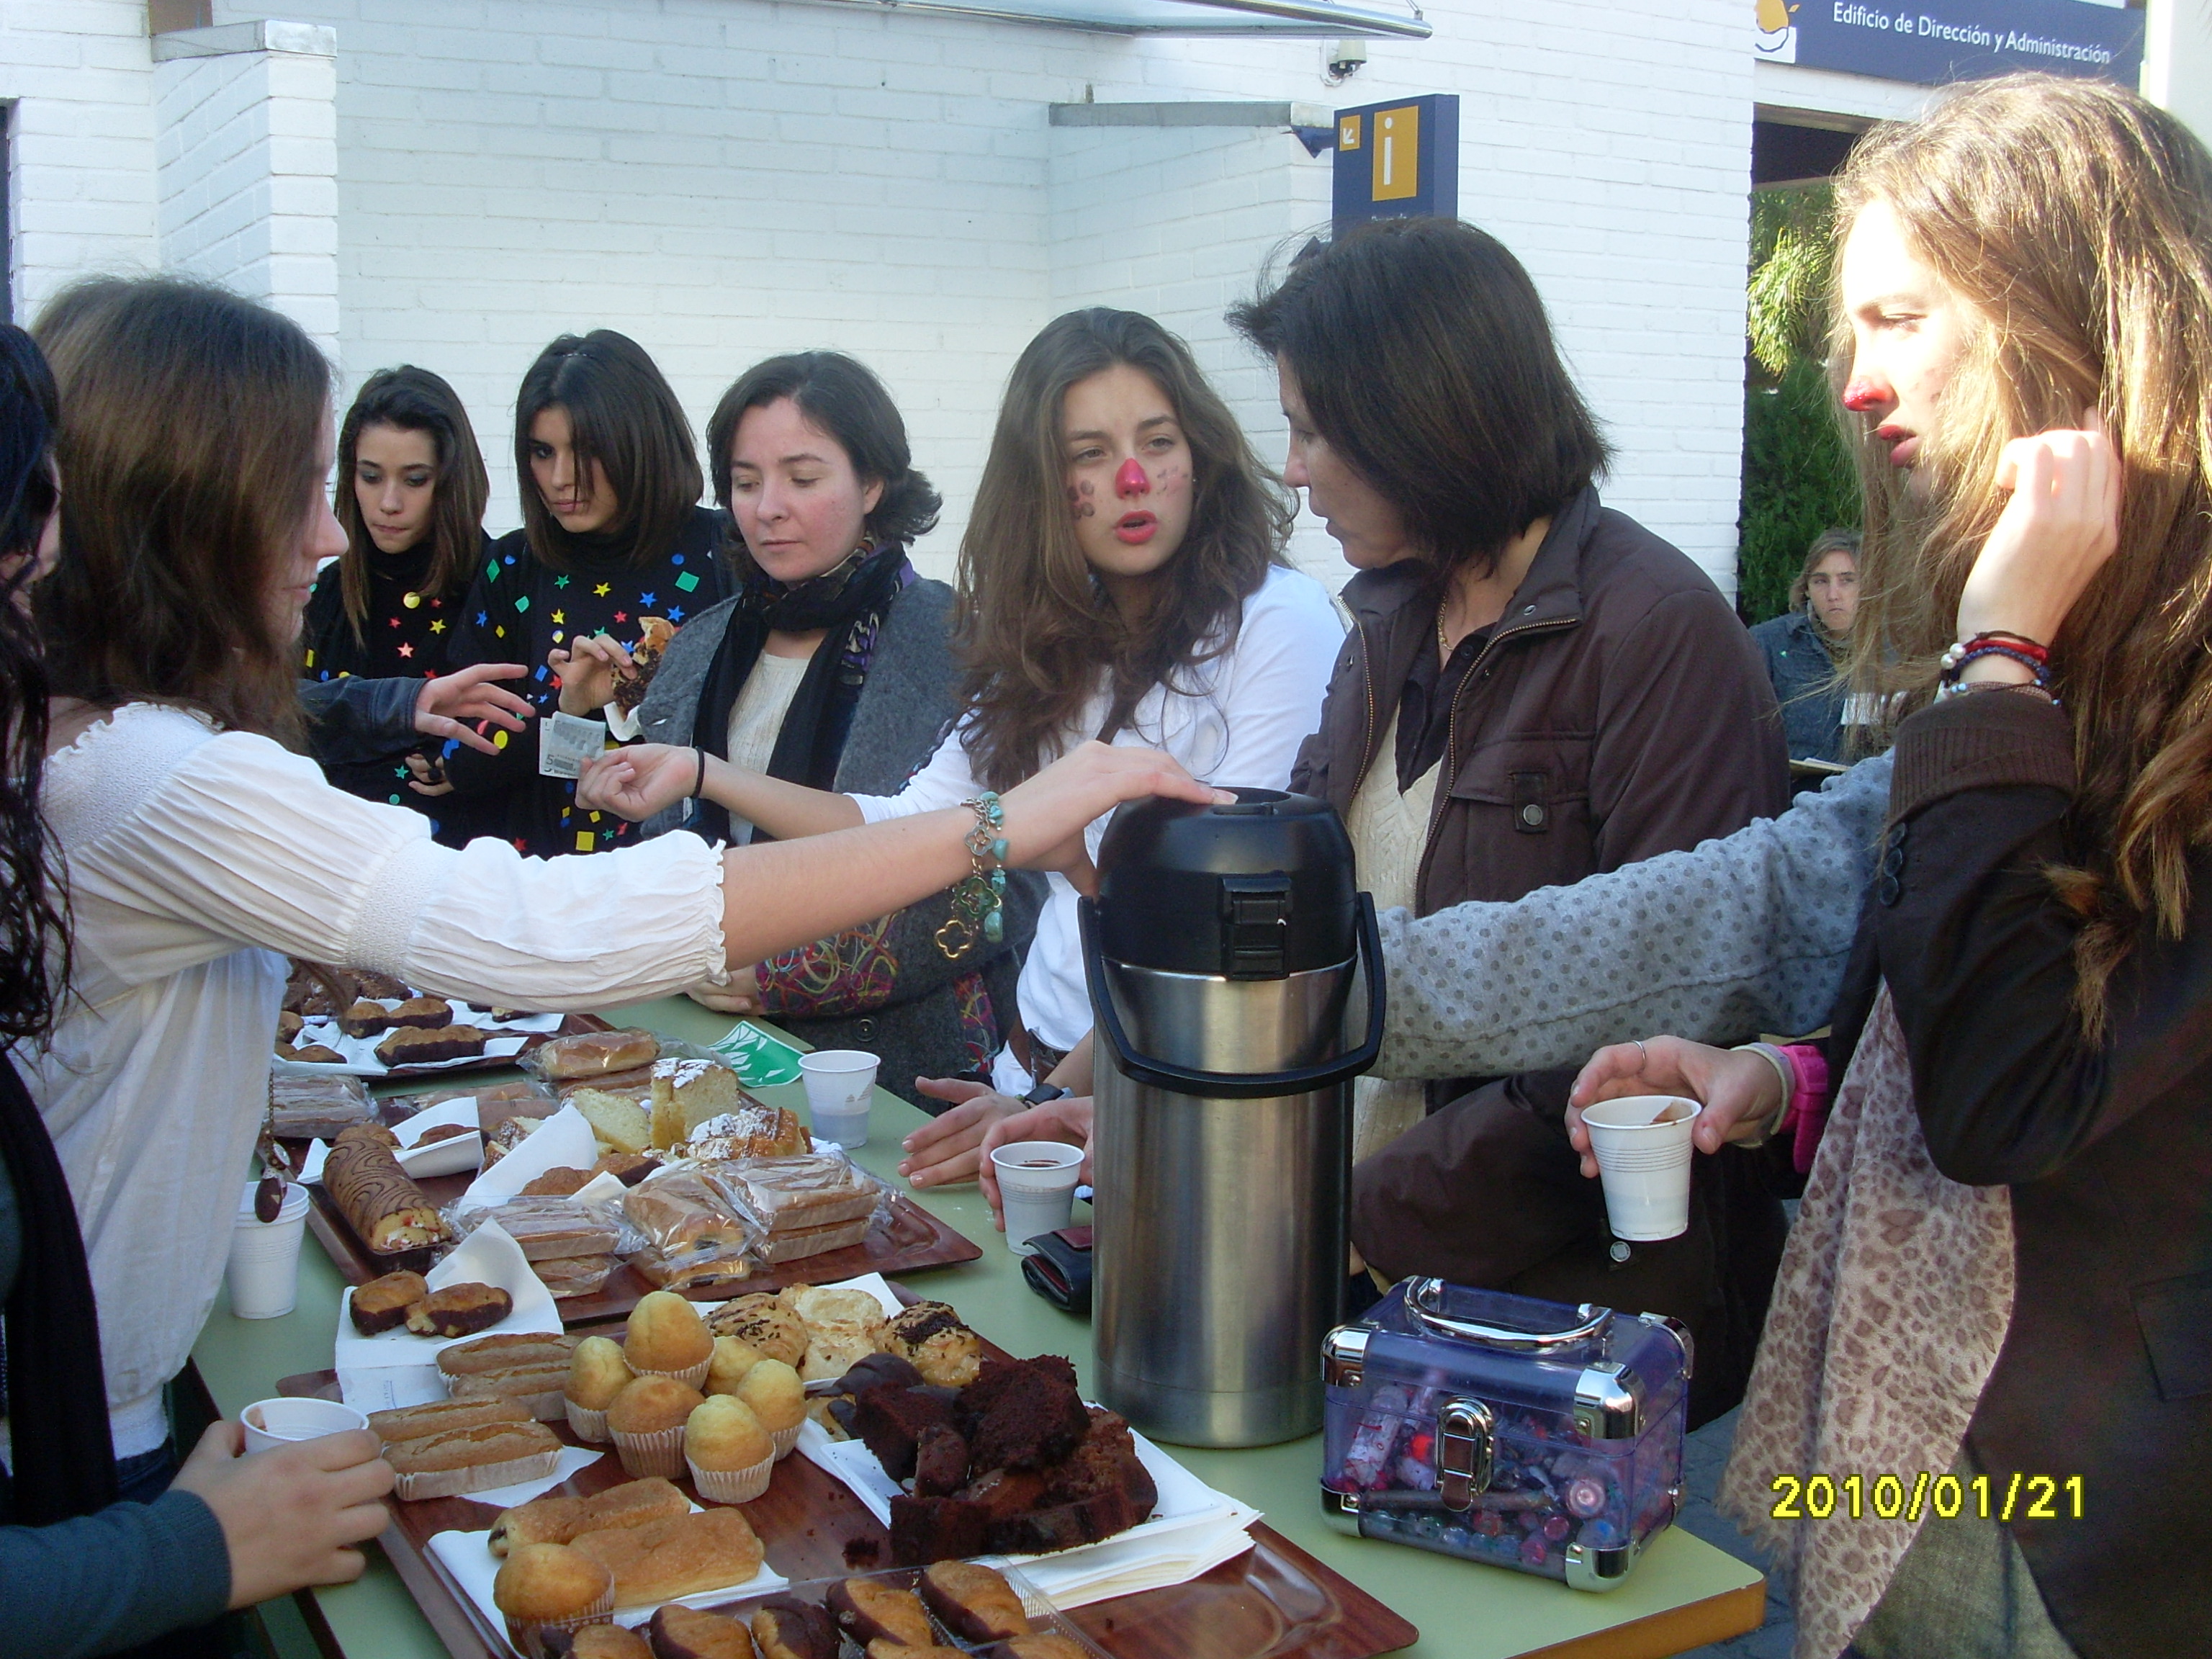 Los estudiantes vendieron pasteles y chocolate durante la mañana.